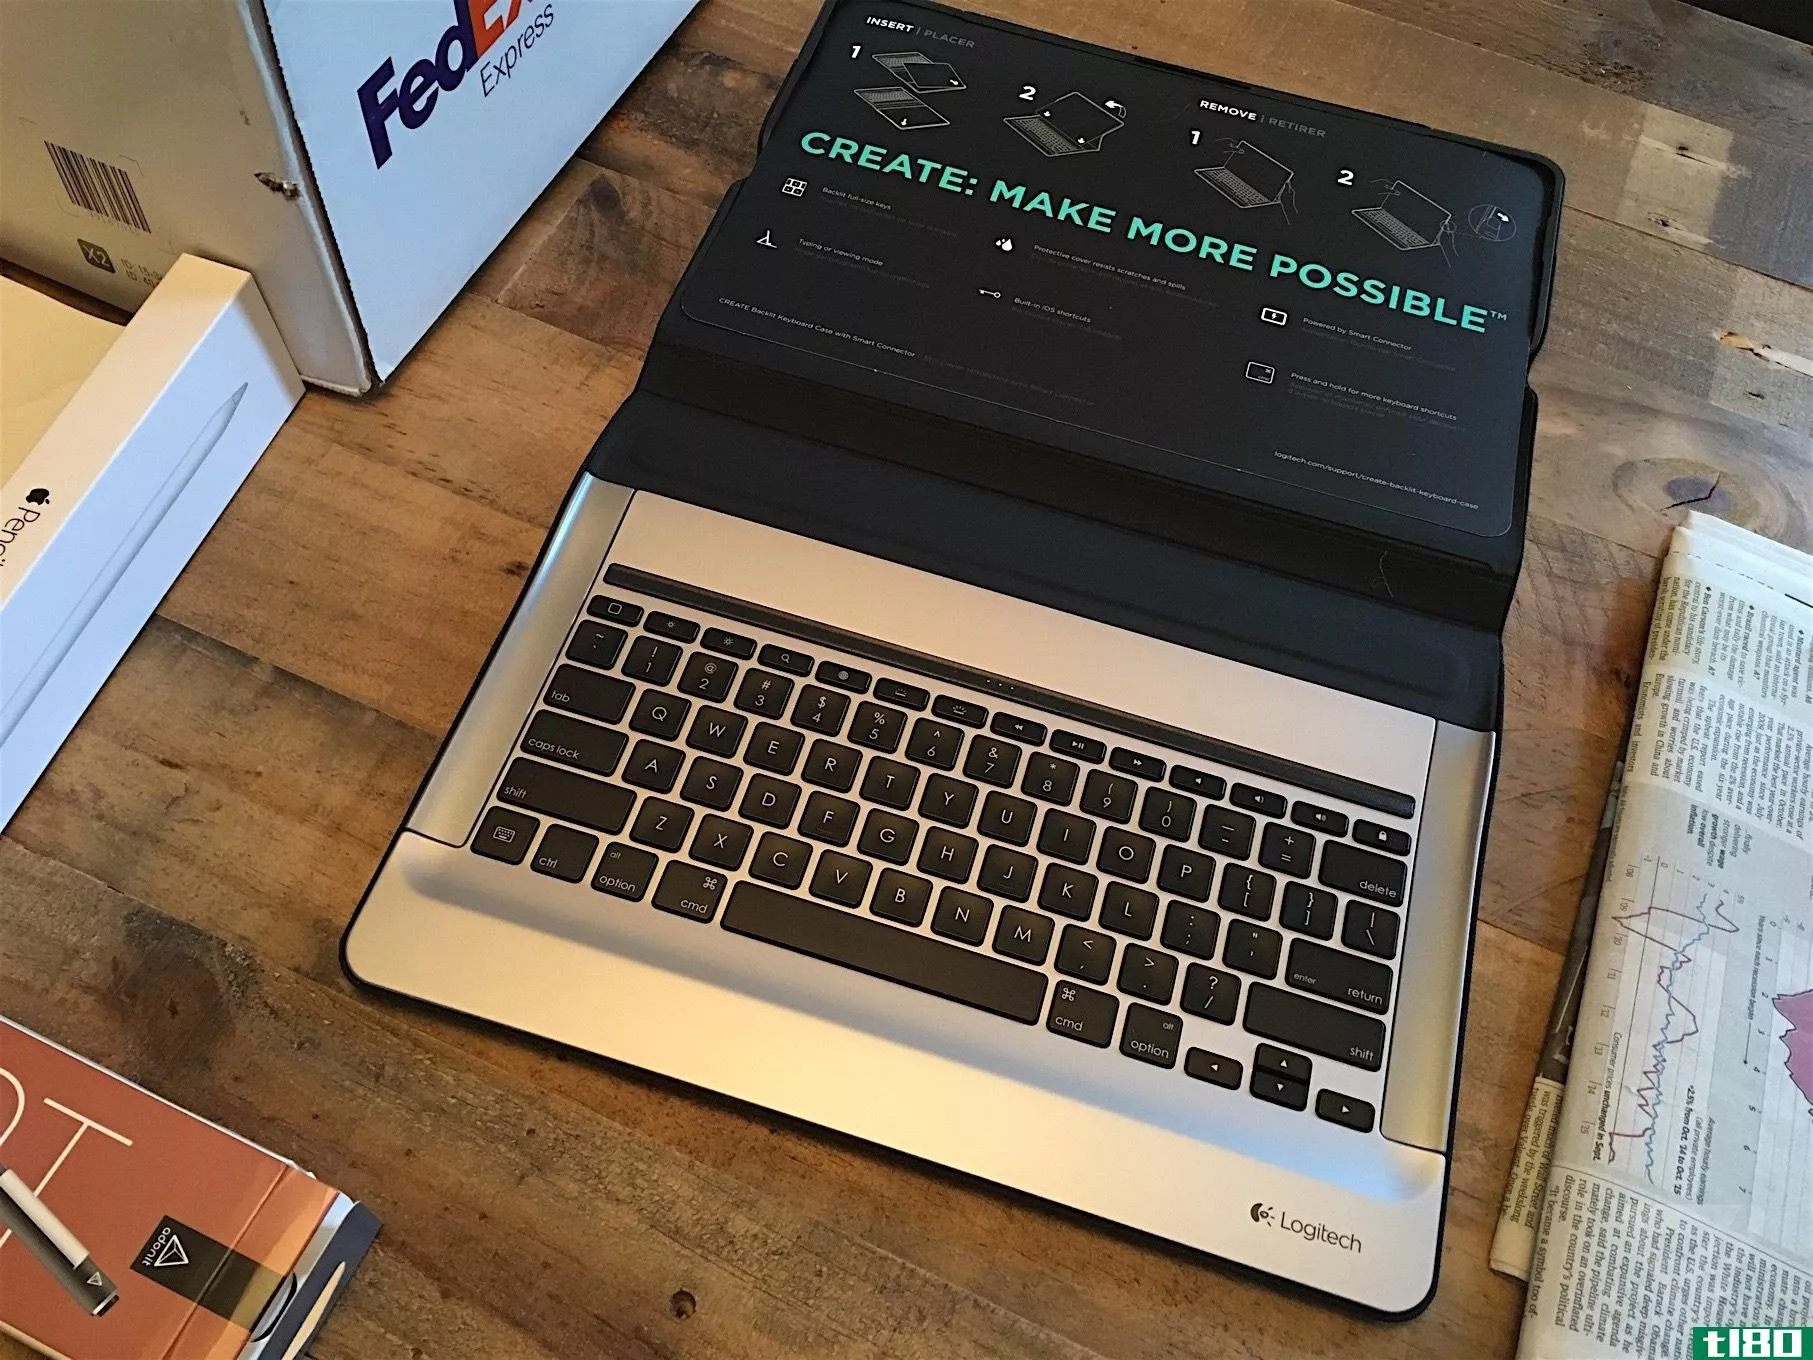 罗技有一个笨重但功能强大的150美元的ipad专业键盘